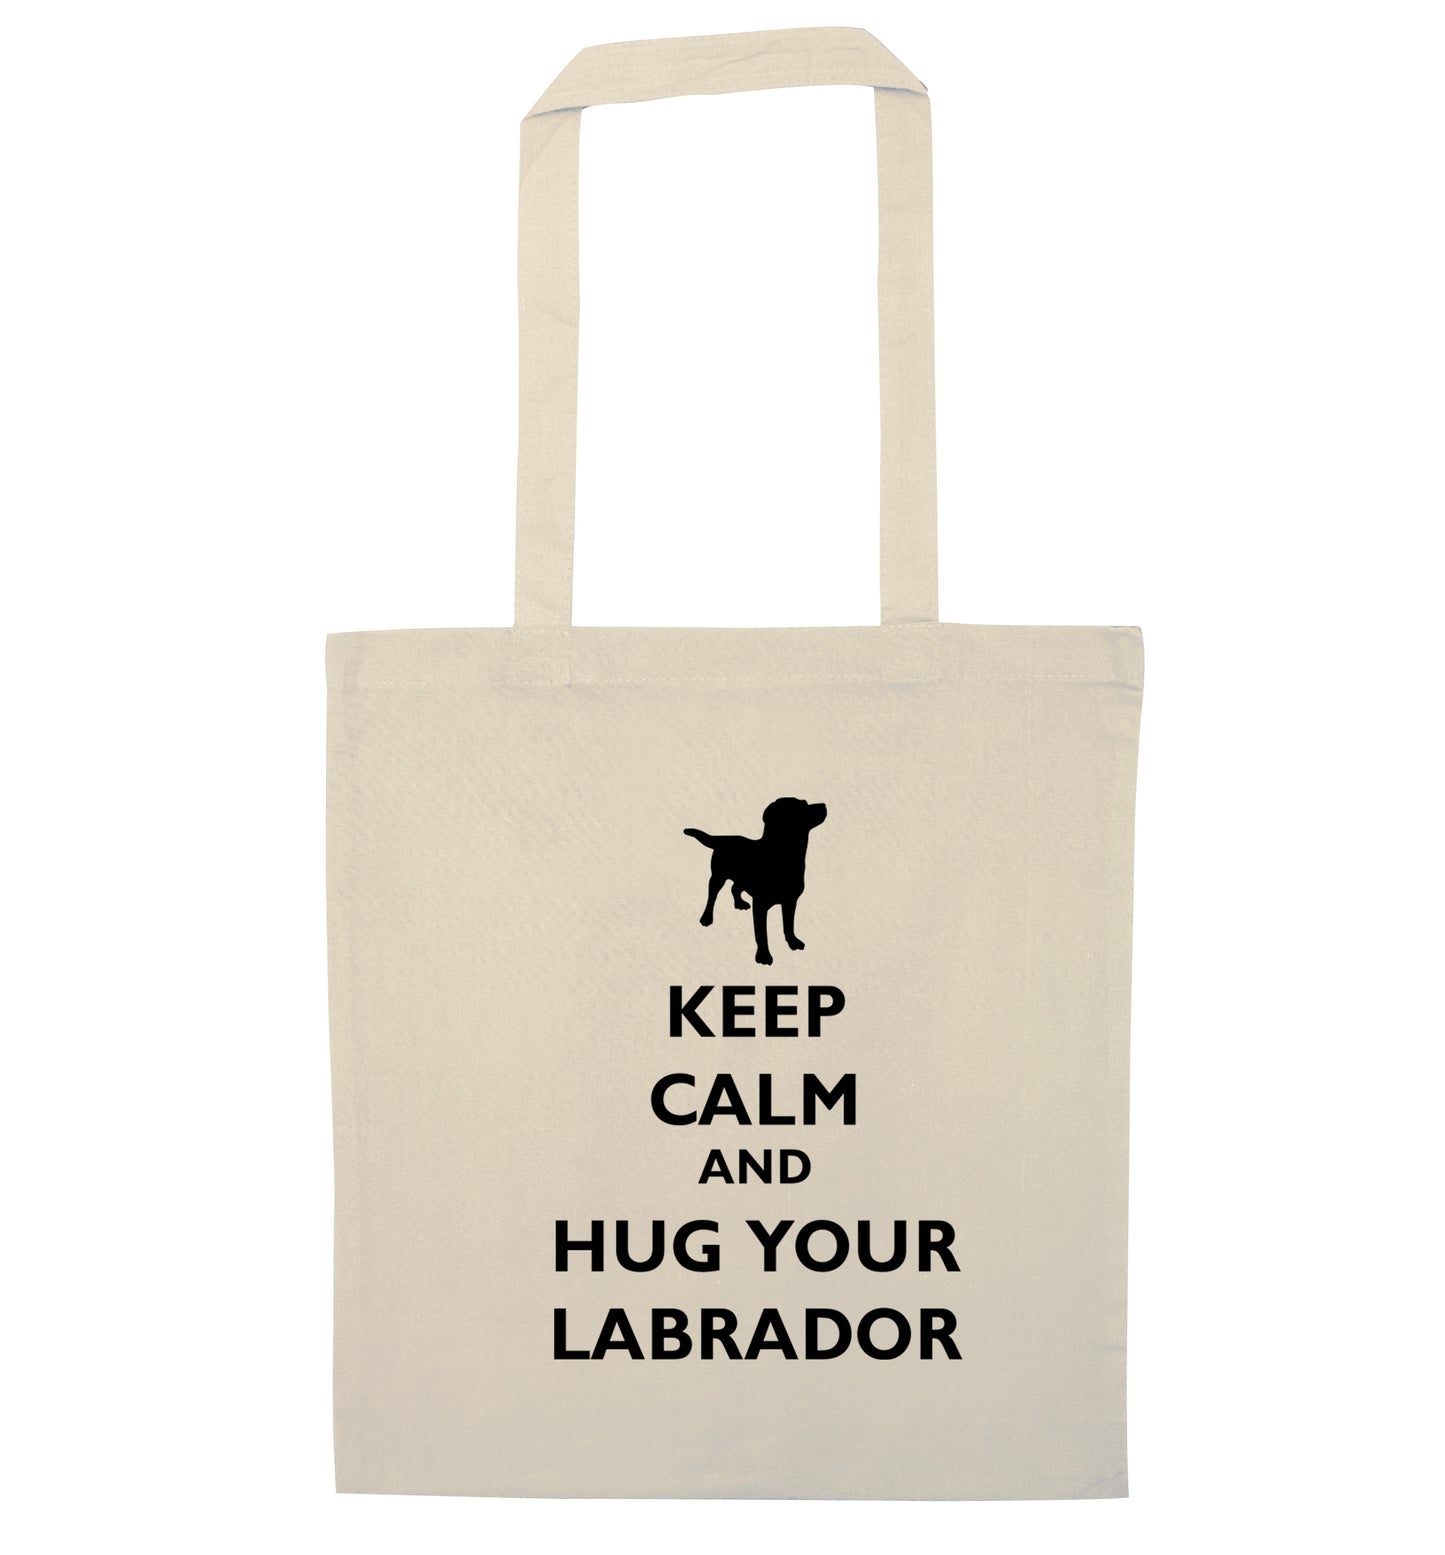 Keep calm and hug your labrador natural tote bag